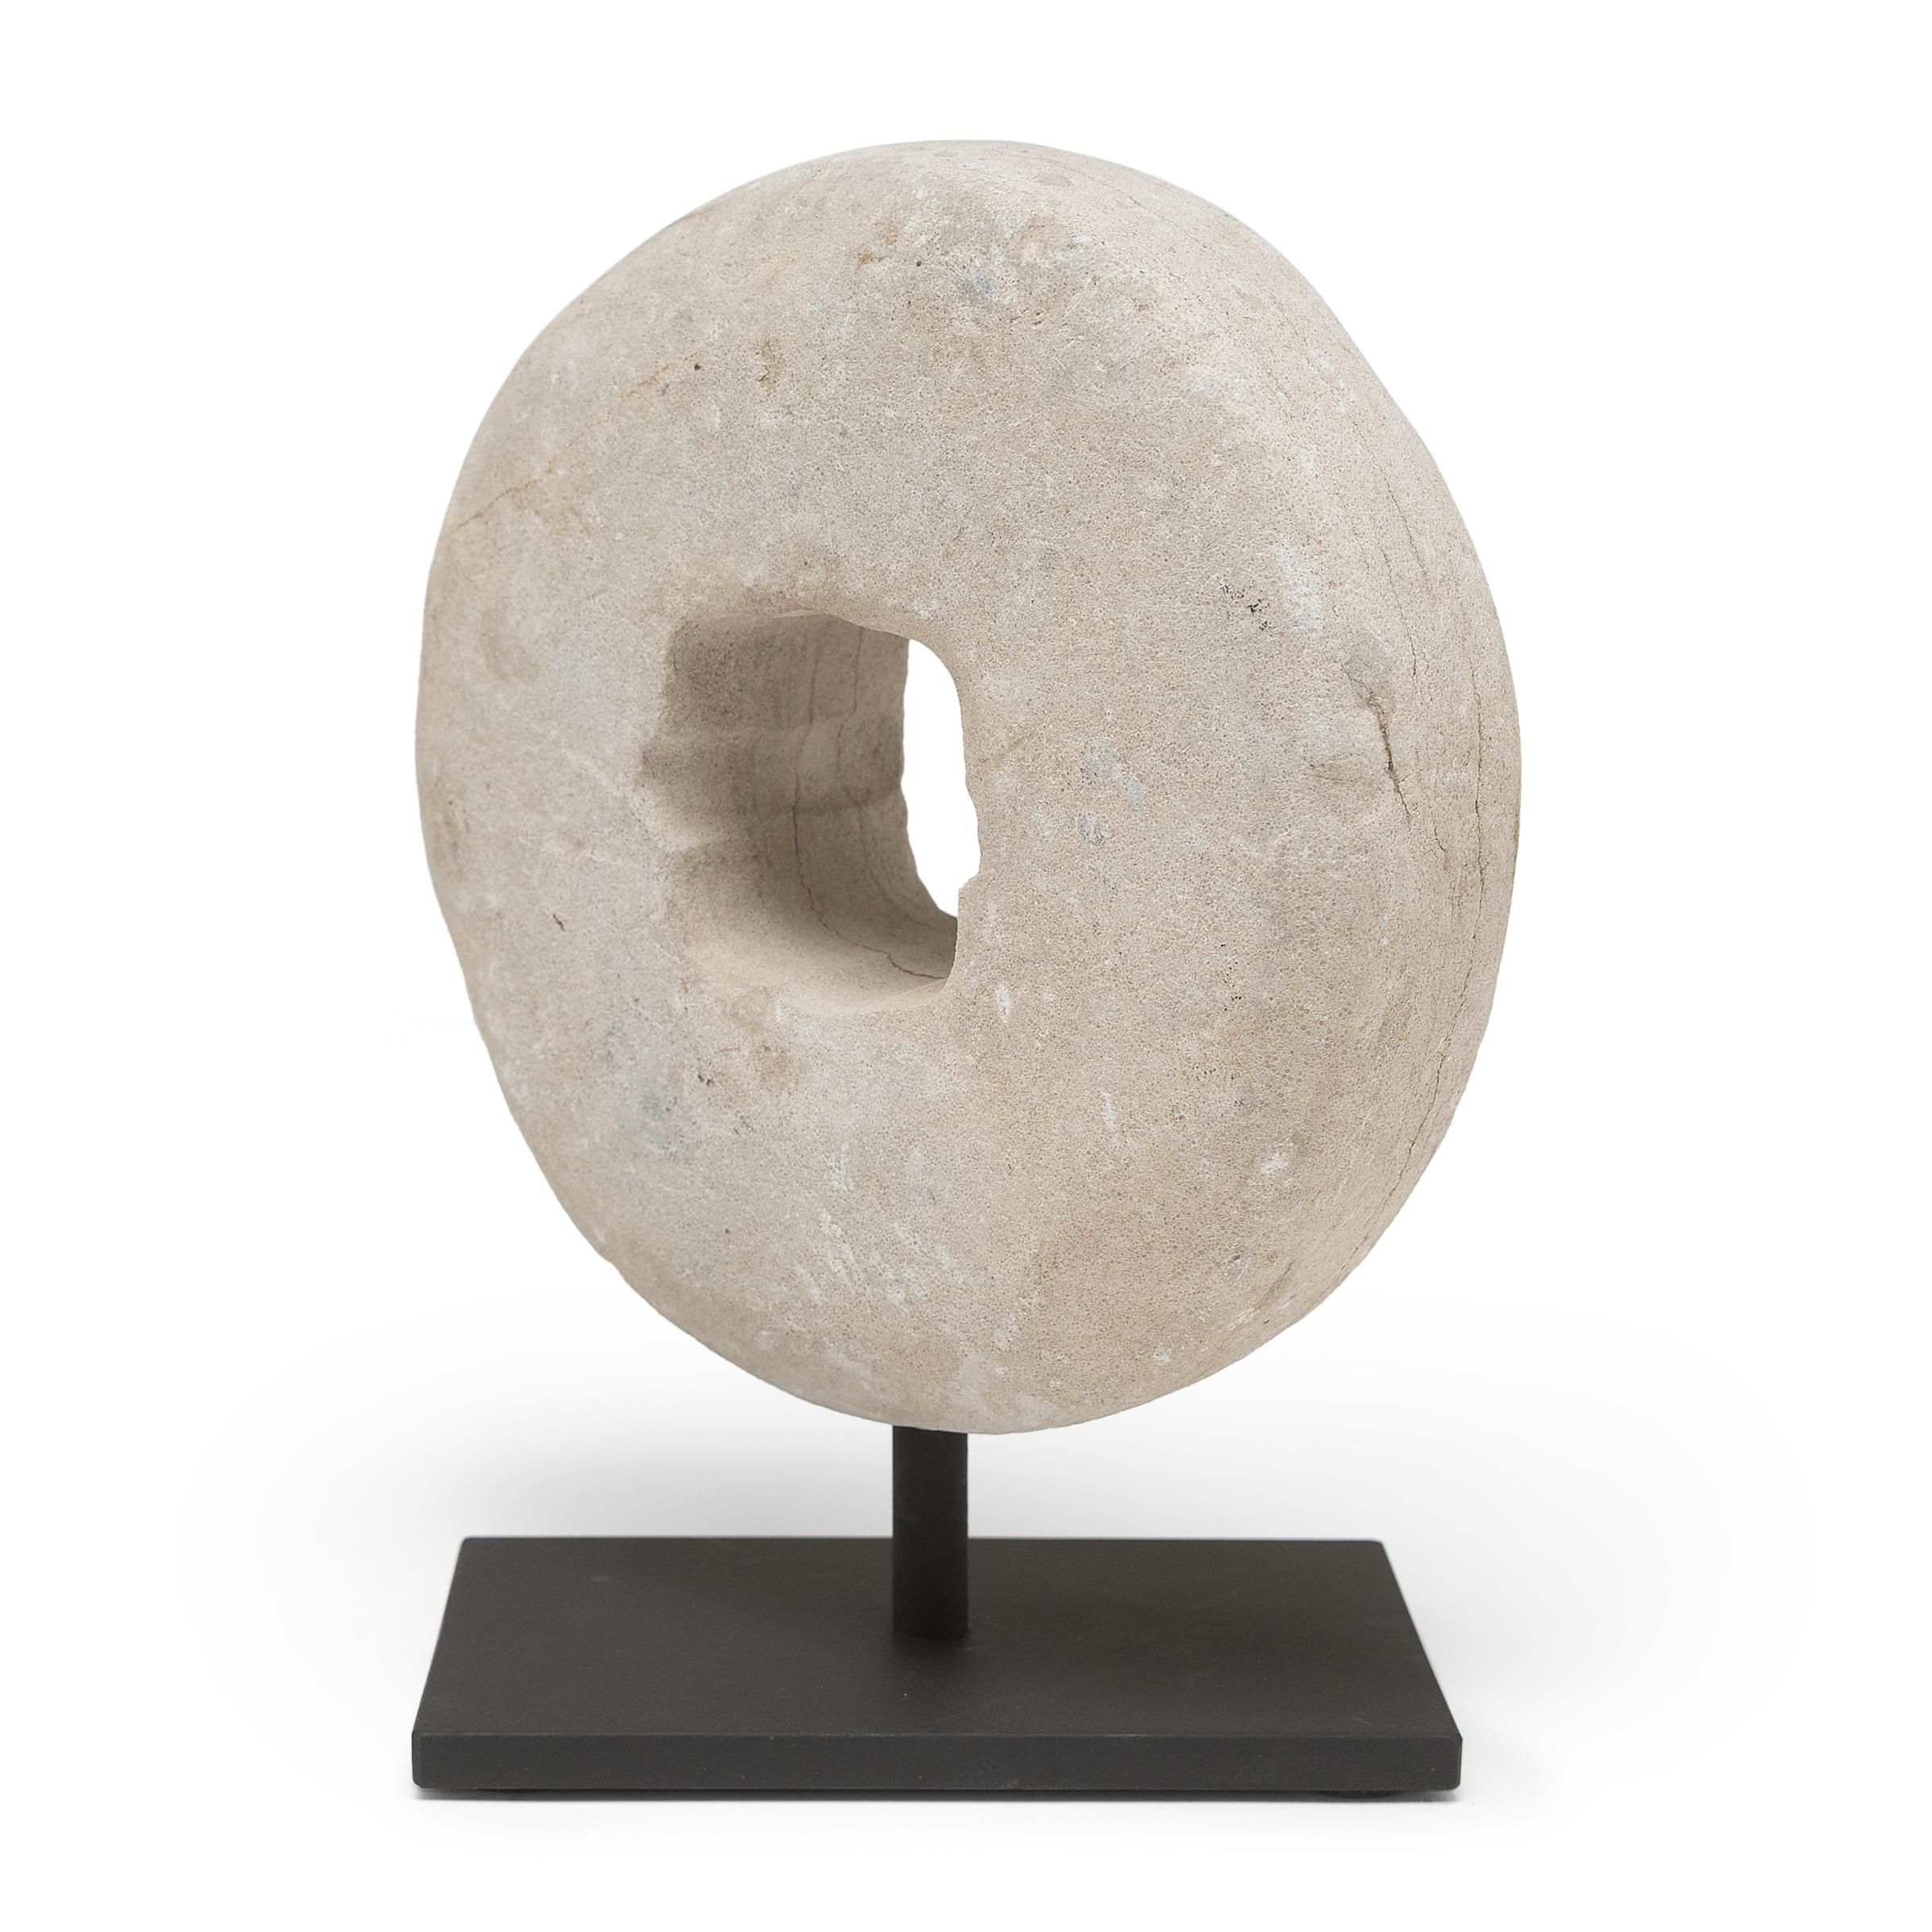 Ce disque rond en pierre était à l'origine une roue de battage du début du XXe siècle. Fixée à un axe en bois qui traversait le centre, la pierre était roulée sur les tiges de blé pour séparer les grains, tirée soit par un homme, soit par un bœuf.